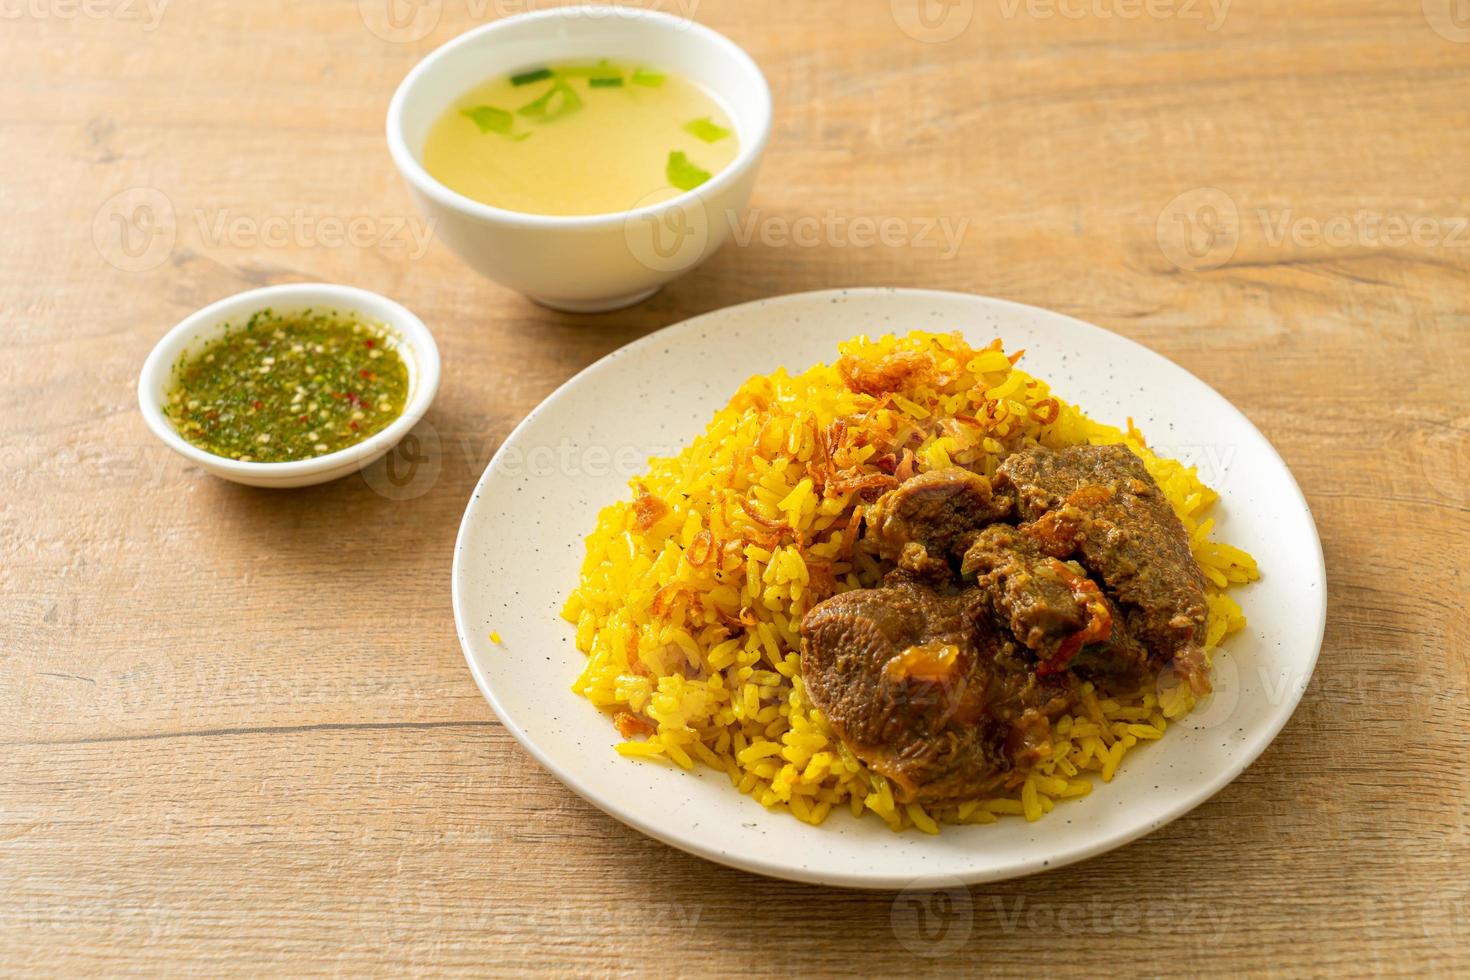 nötkött biryani eller curried ris och nötkött - thailändsk-muslimsk version av indisk biryani, med doftande gult ris och nötkött foto